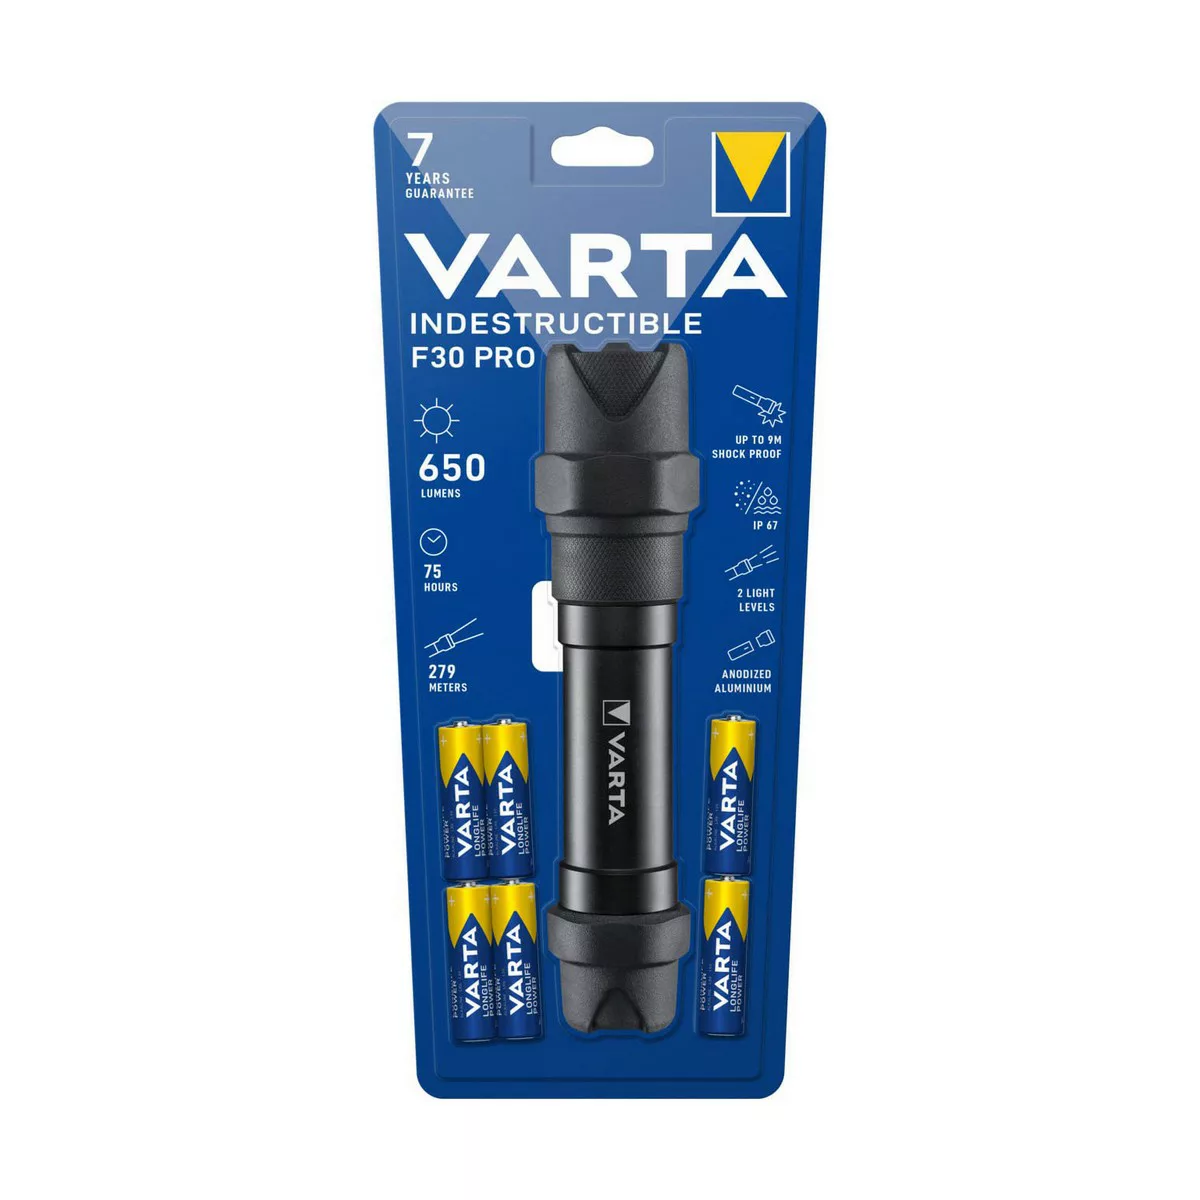 Taschenlampe Led Varta F30 Pro günstig online kaufen